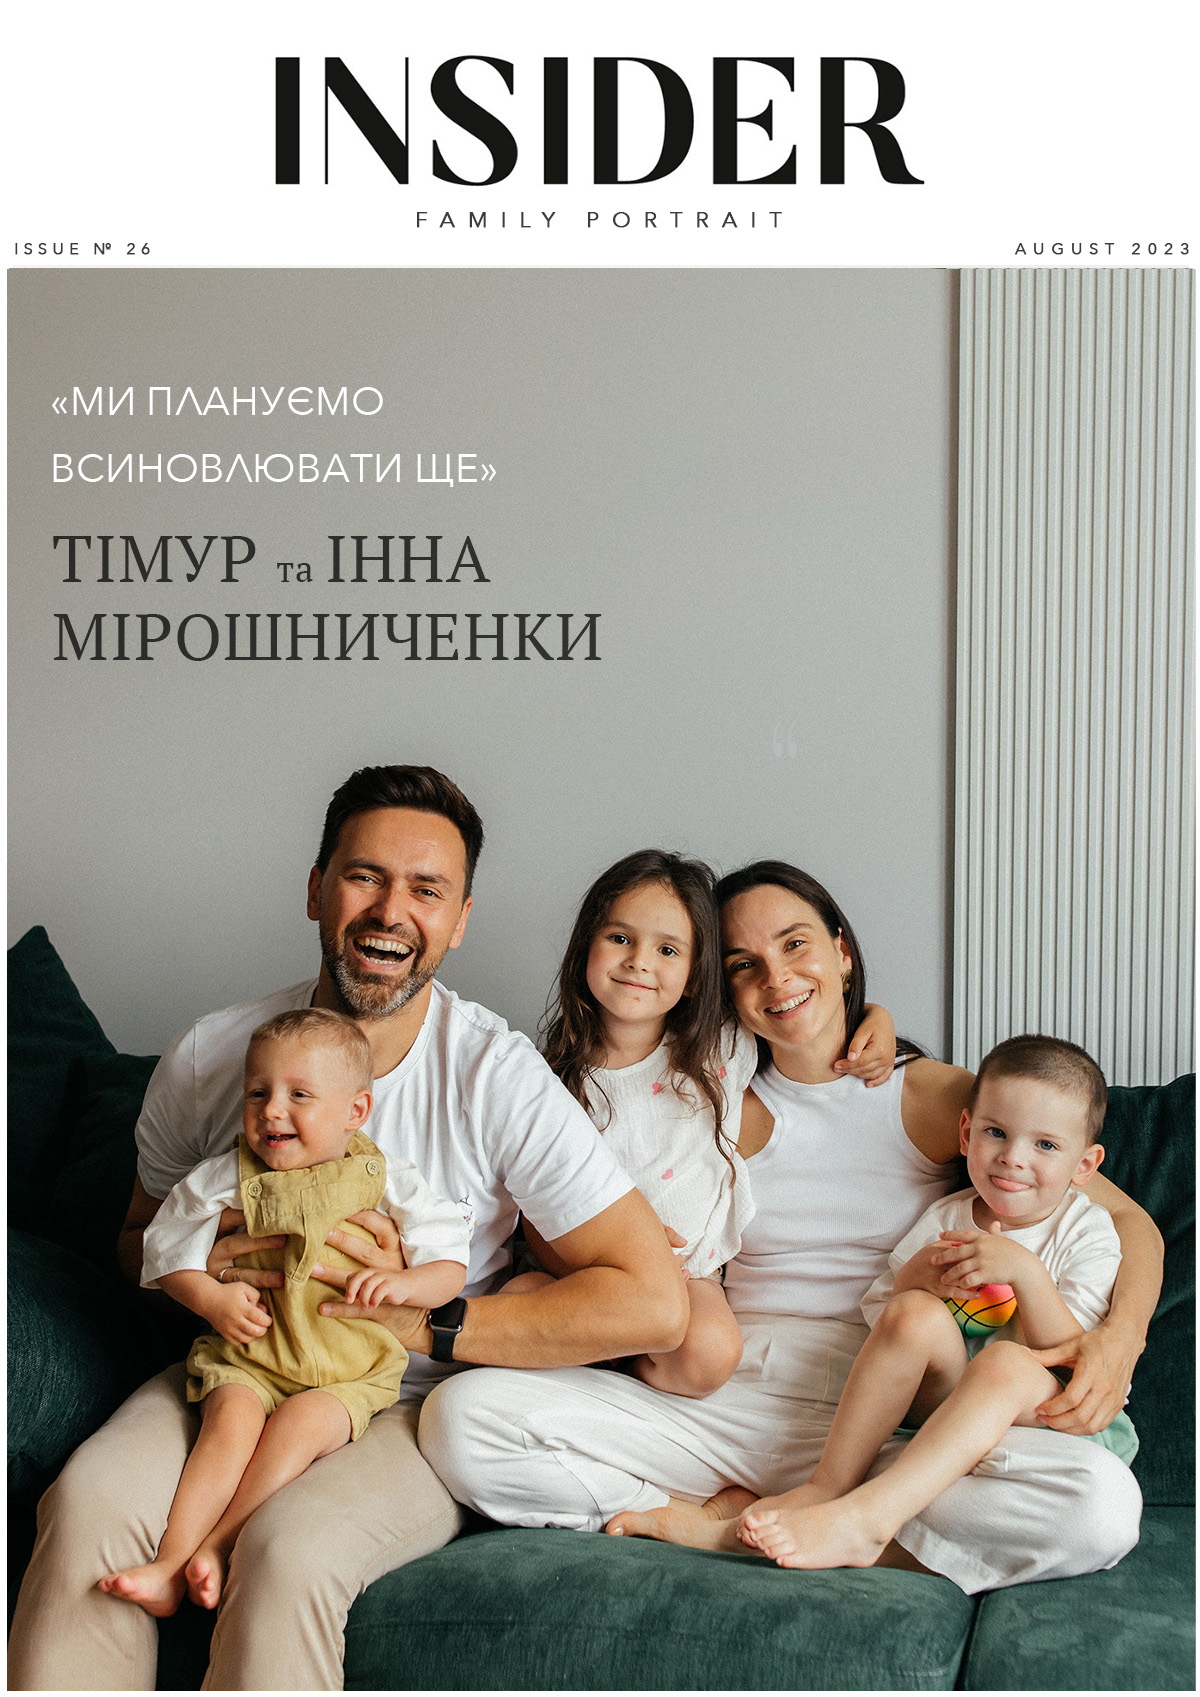 «Плануємо всиновлювати ще»: Тімур та Інна Мірошниченки про сина Марселя і новий етап життя